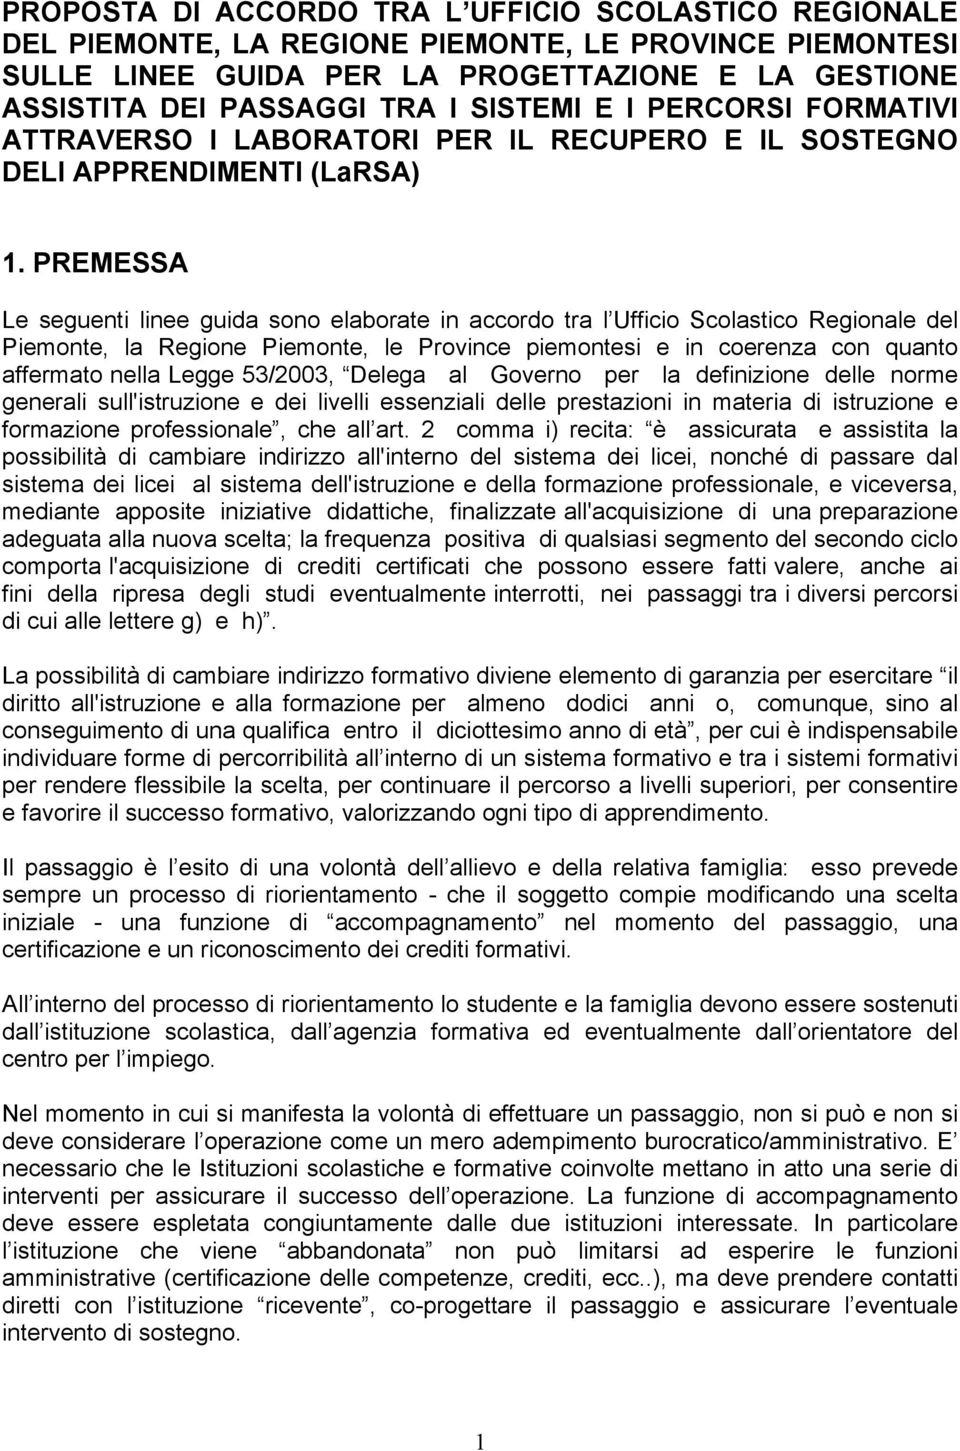 PREMESSA Le seguenti linee guida sono elaborate in accordo tra l Ufficio Scolastico Regionale del Piemonte, la Regione Piemonte, le Province piemontesi e in coerenza con quanto affermato nella Legge